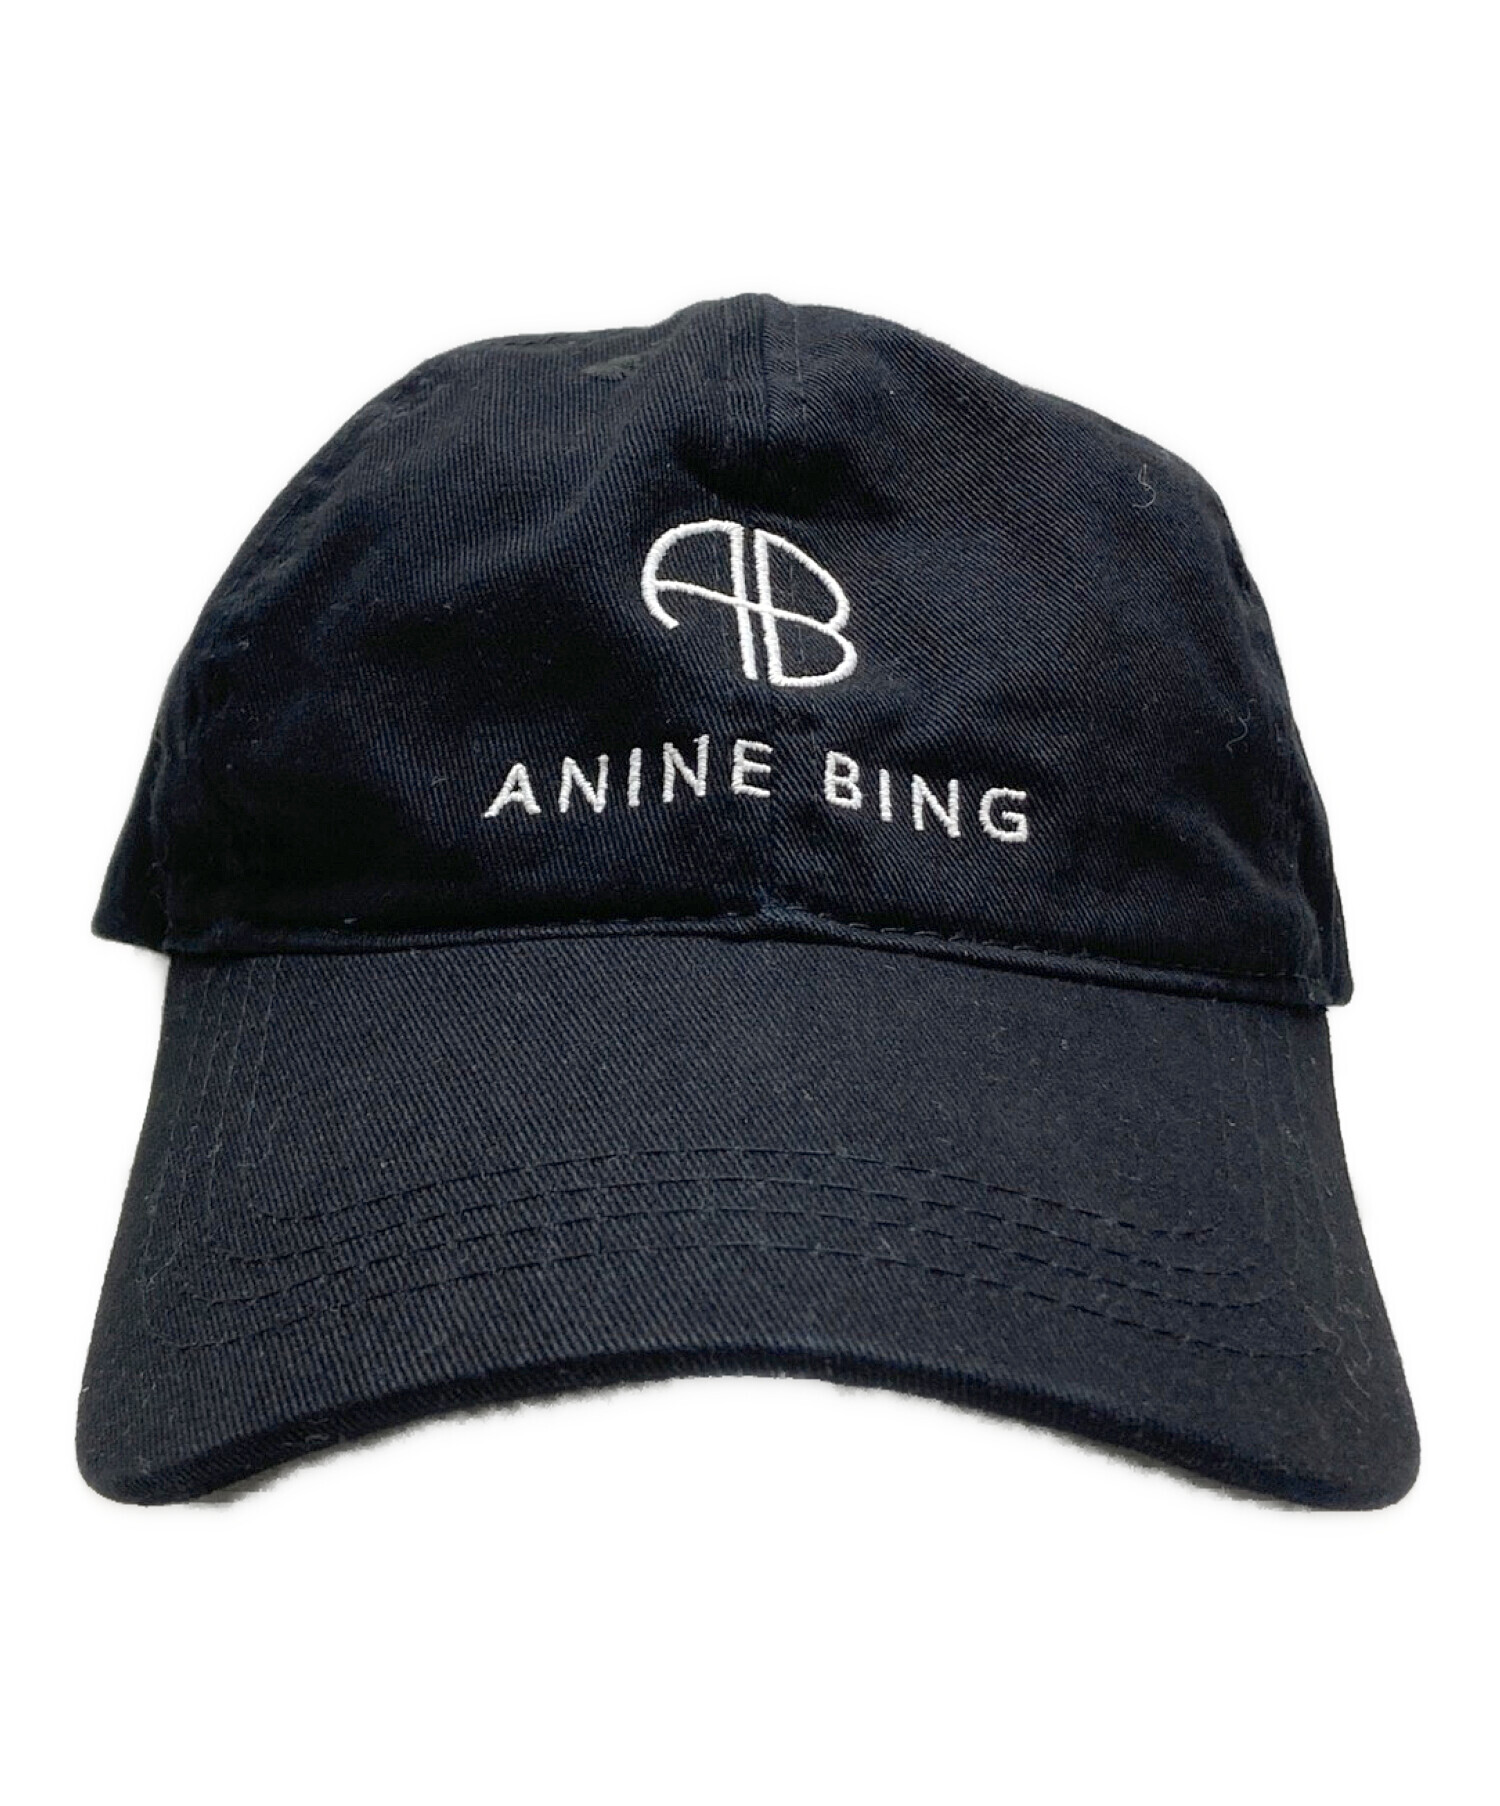 ANINE BING (アニン ビン) キャップ Deuxieme Classe取り扱い ブラック